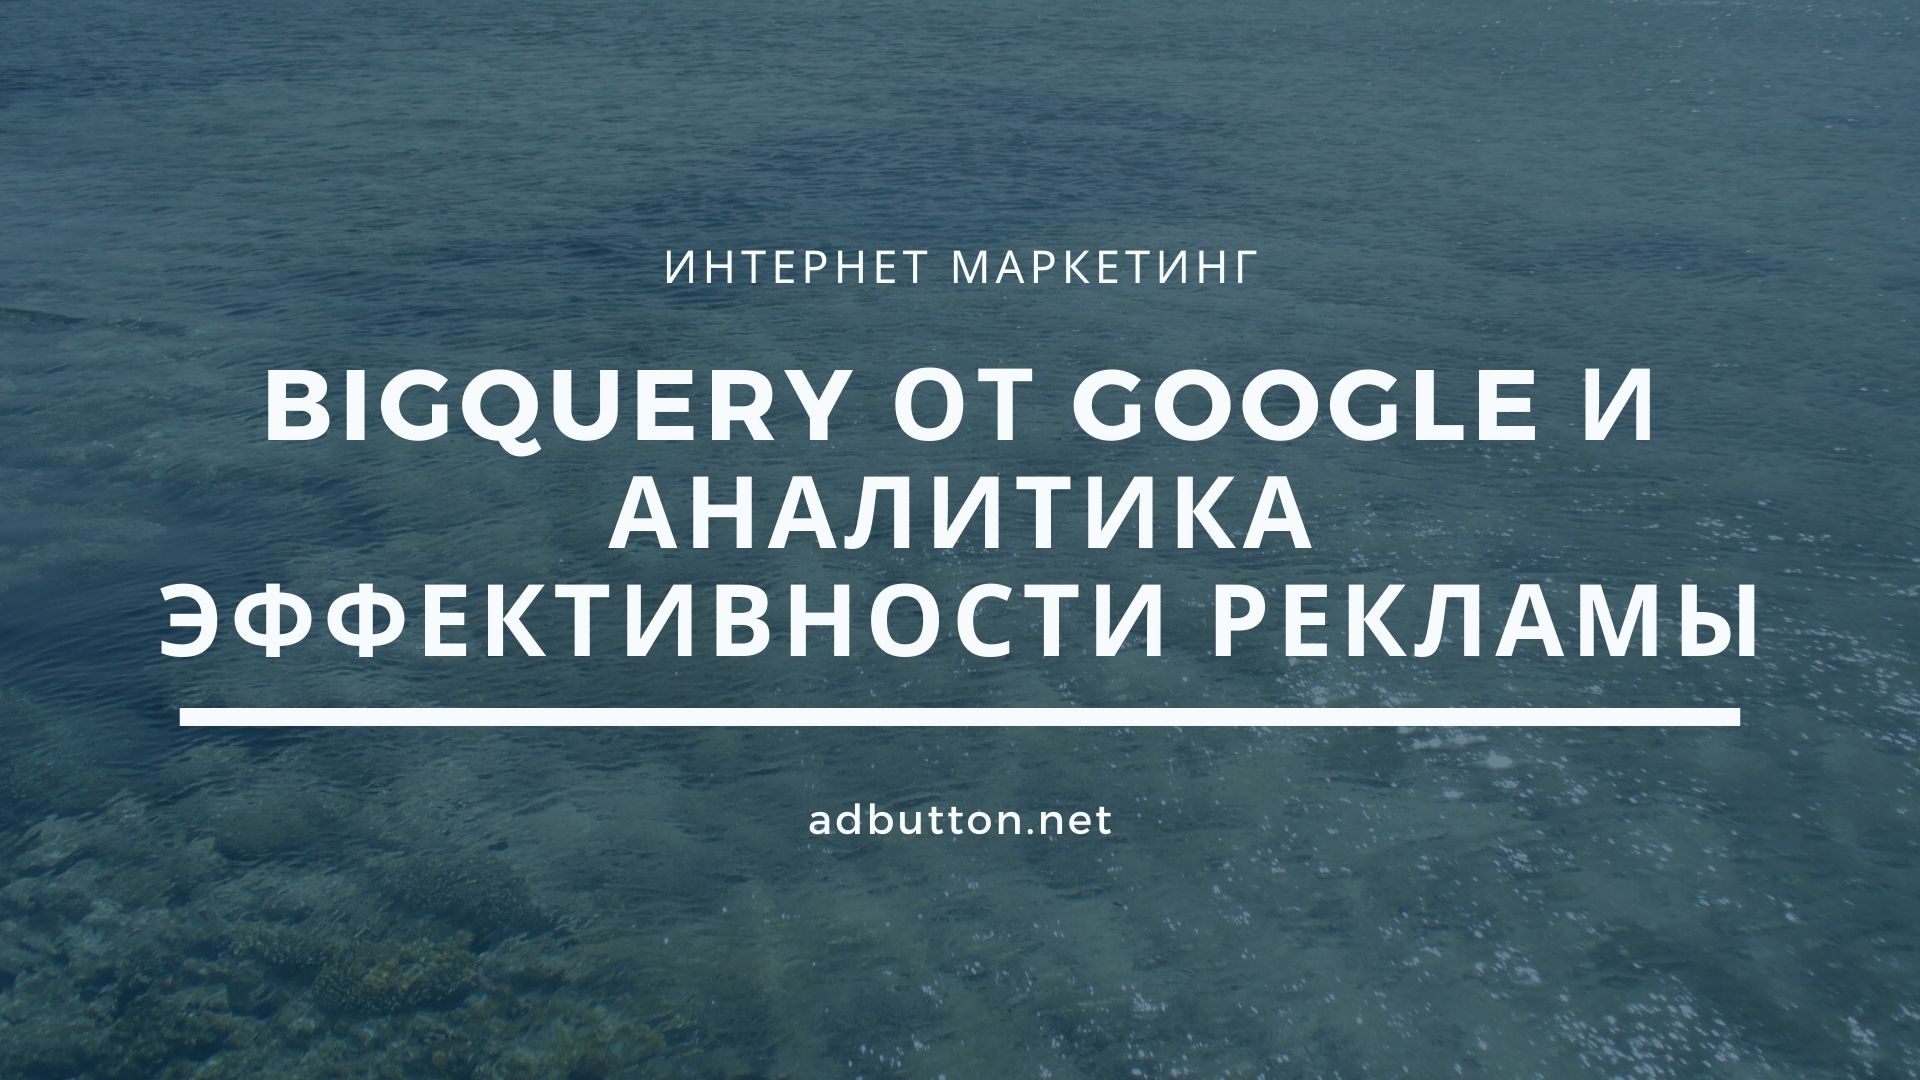 BigQuery от Google — аналитика эффективности рекламы и оптимизация